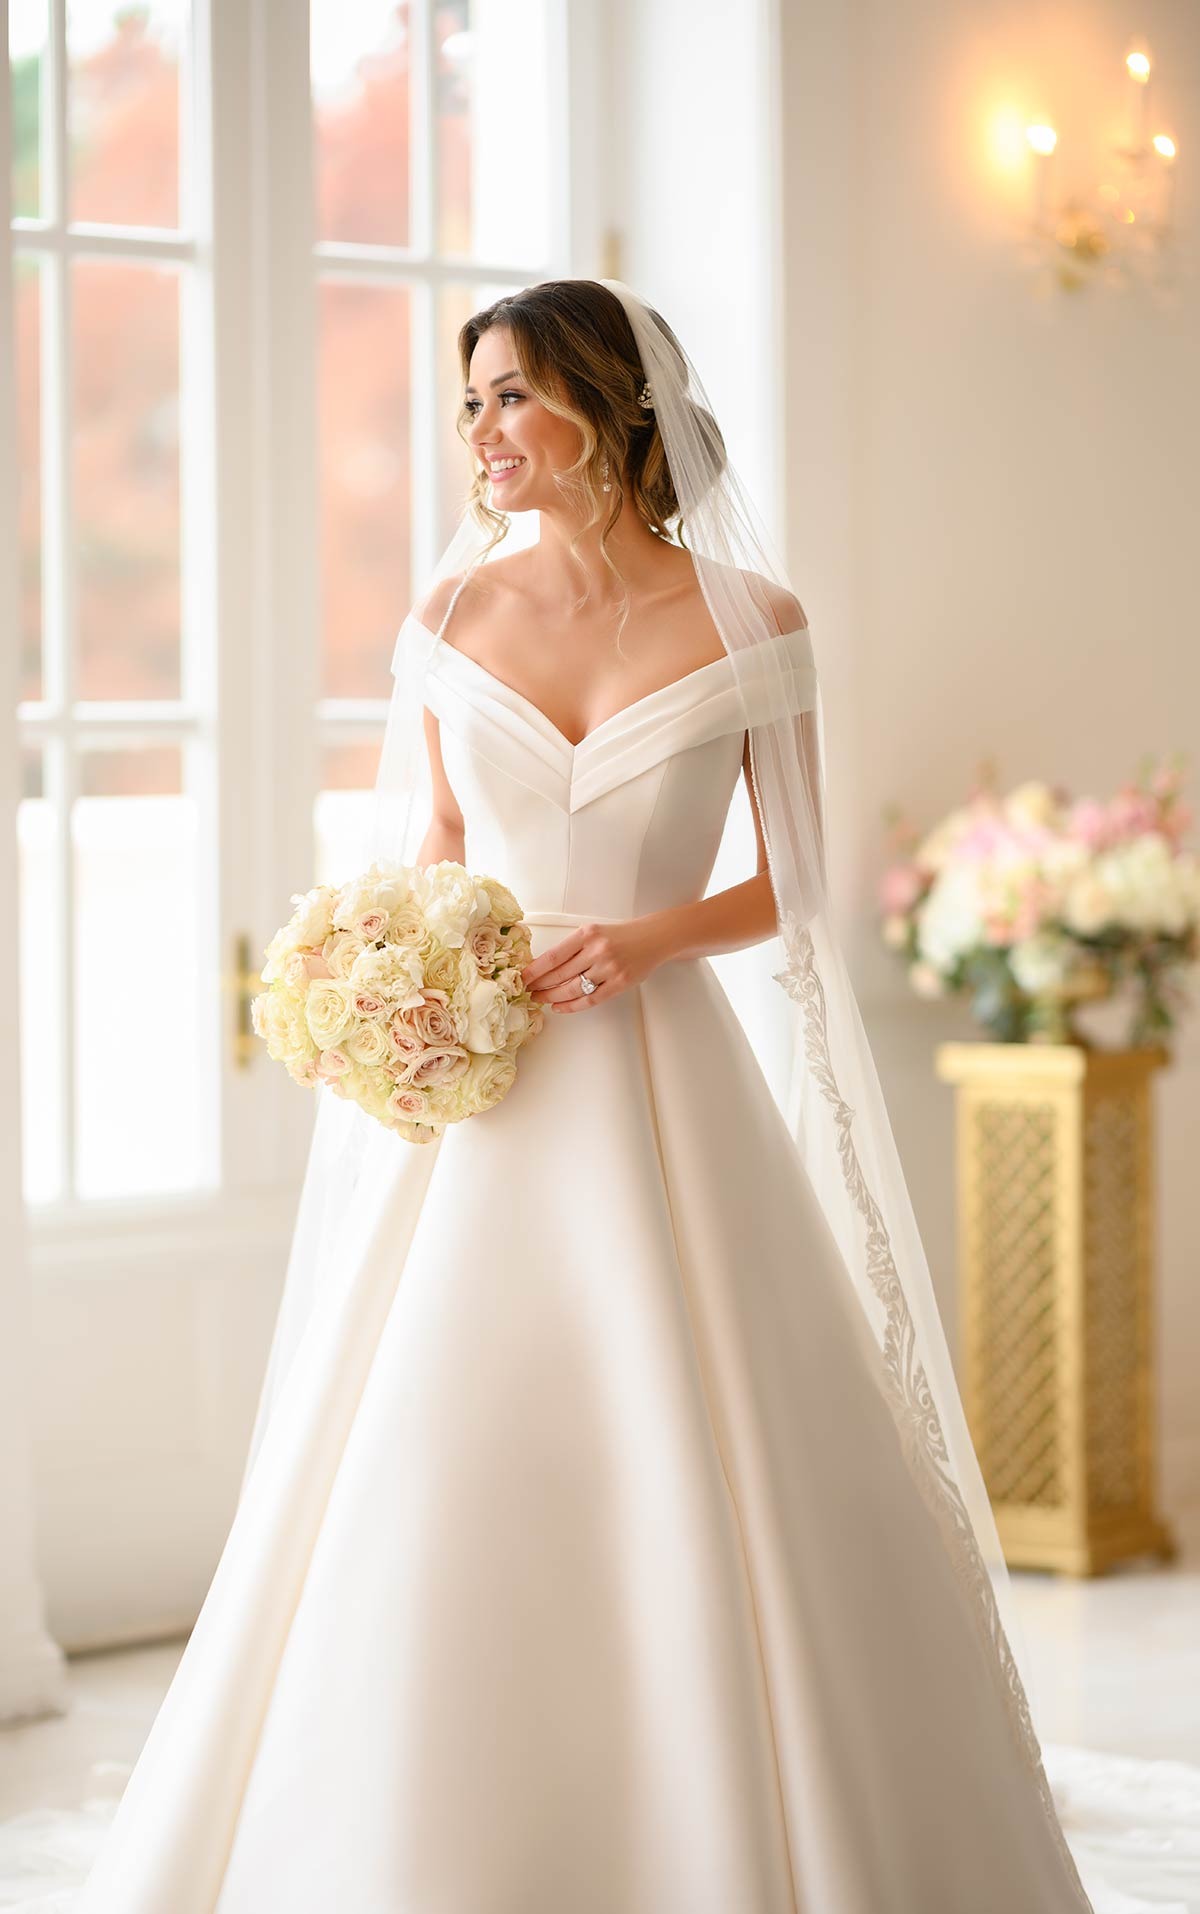 Nếu bạn đang tìm kiếm một chiếc váy cưới đẹp và thanh lịch, hãy xem qua bức ảnh này về mẫu váy cưới trễ vai. Với thiết kế thanh mảnh, đường xẻ tỉ mỉ, chiếc váy này sẽ giúp bạn trông thêm phần quý phái và sành điệu.